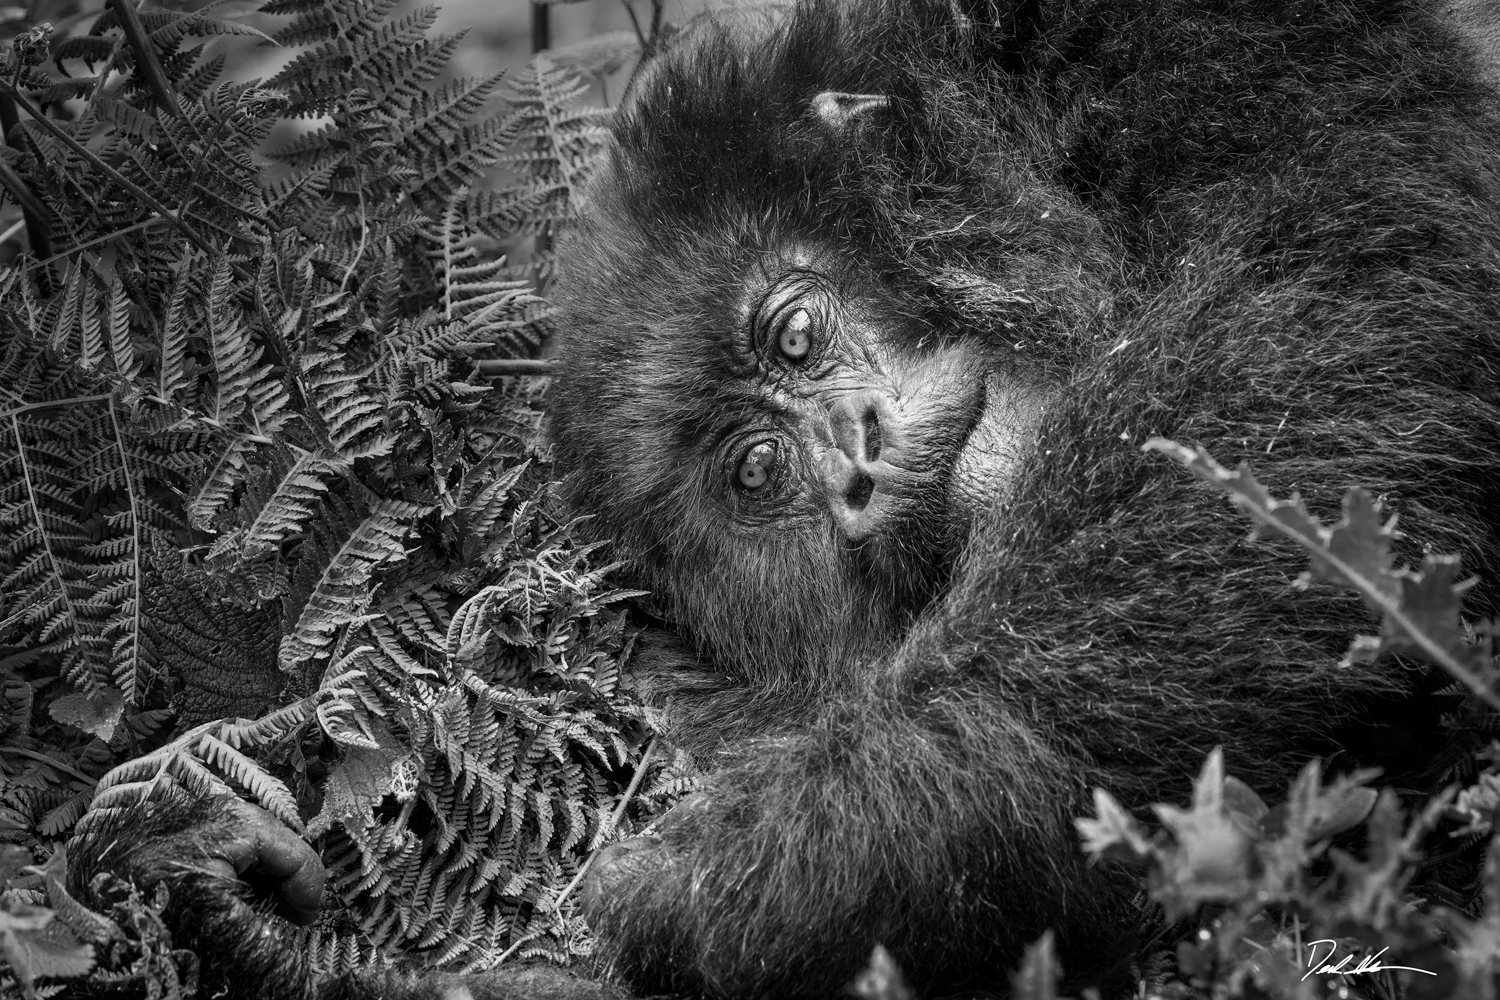 black and white image of monkey